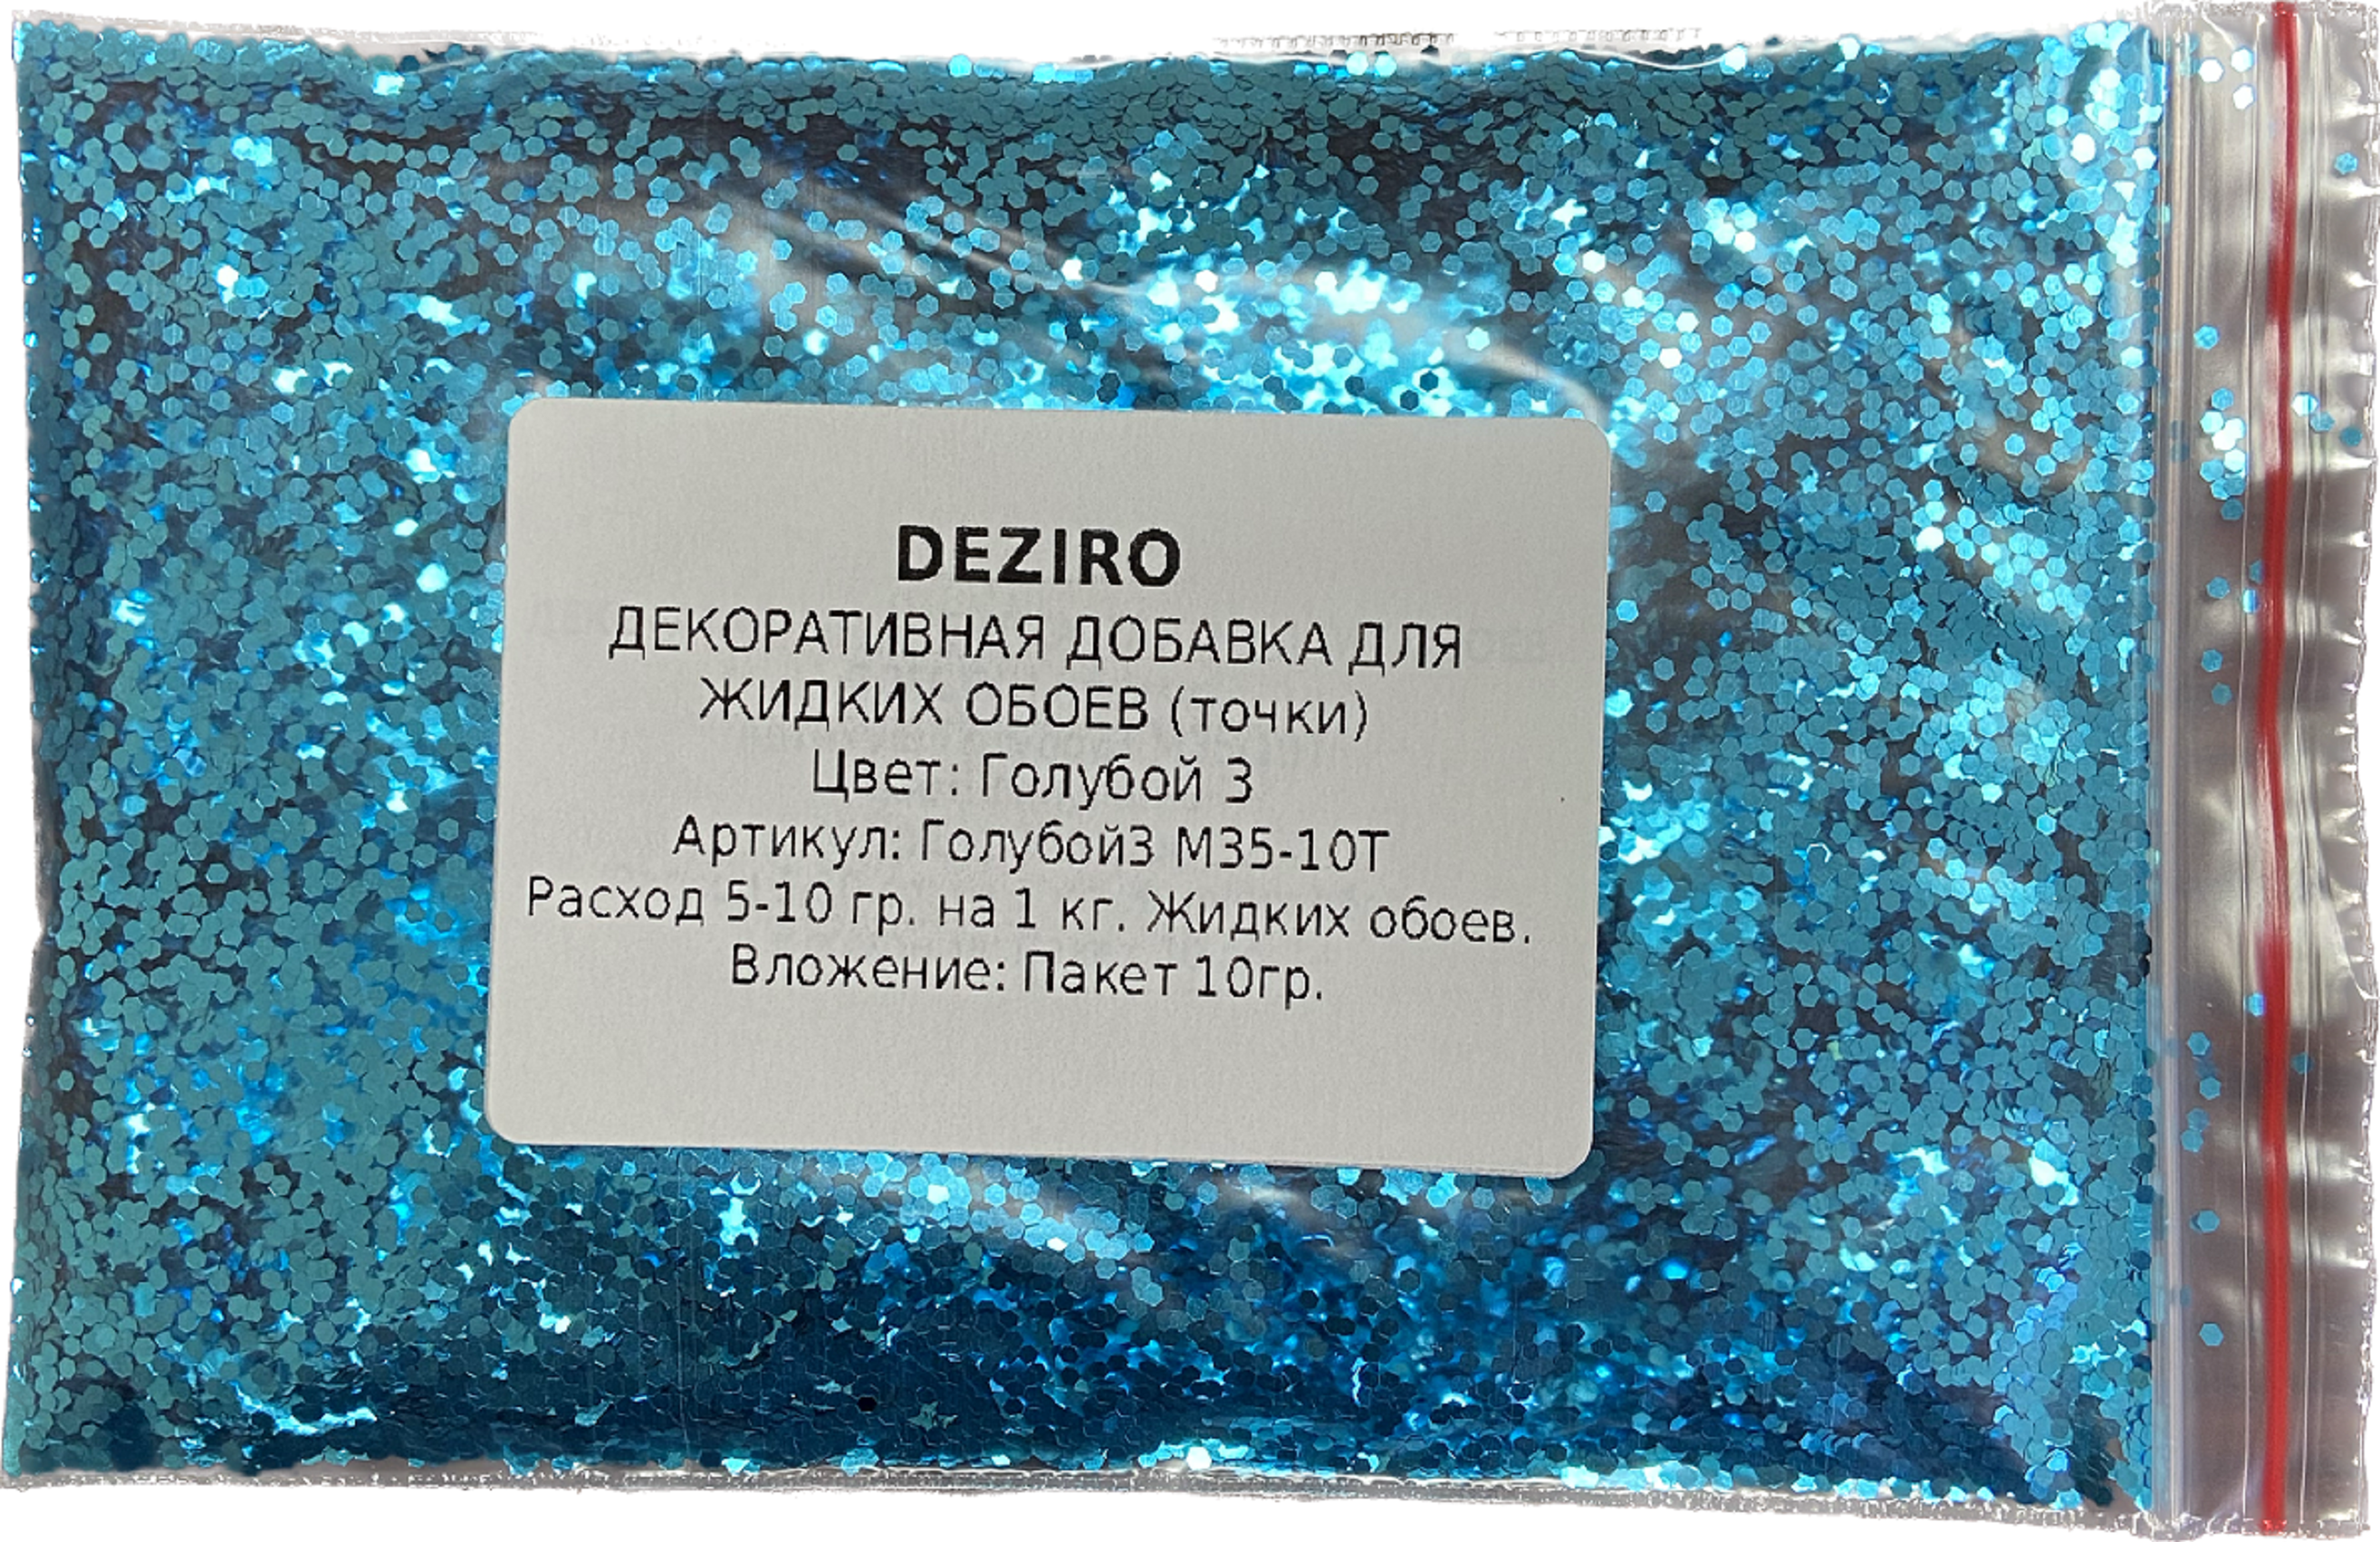 Покрытие декоративное Deziro декоративная добавка для жидких обоев блестки  цвет голубой3 М35-10Т 0.2 кг - купить в Ростове-на-Дону по низкой цене,  описание, фото и отзывы в Леруа Мерлен